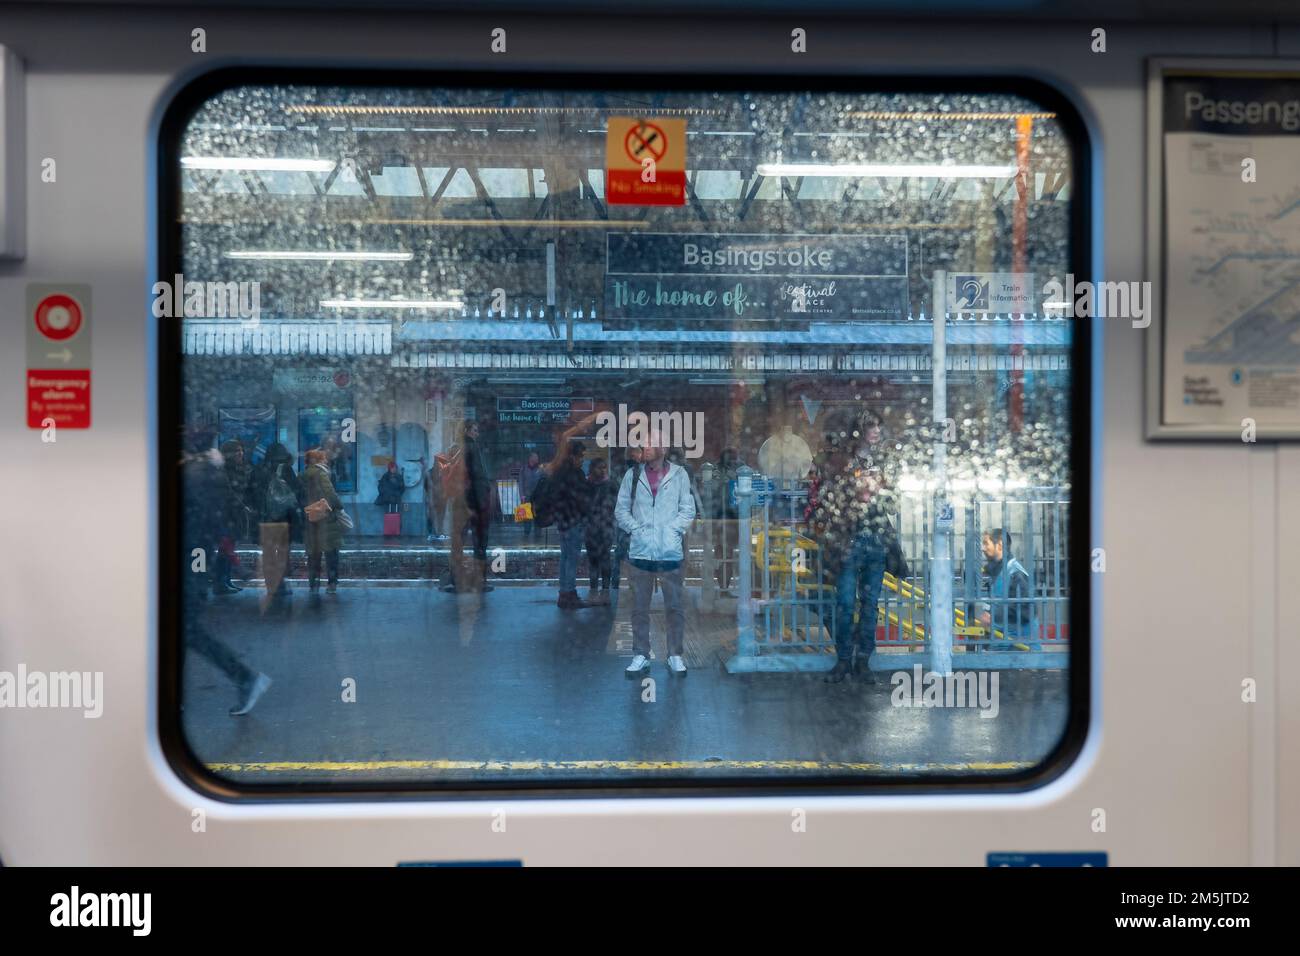 Aus dem Fenster mit dem überdachten Regentropfen schauen Sie auf die Leute, die auf einem Bahnhofsplatz stehen. Konzept: Verspätete Verkehrsdienste, Zugverspätungen. UK Stockfoto